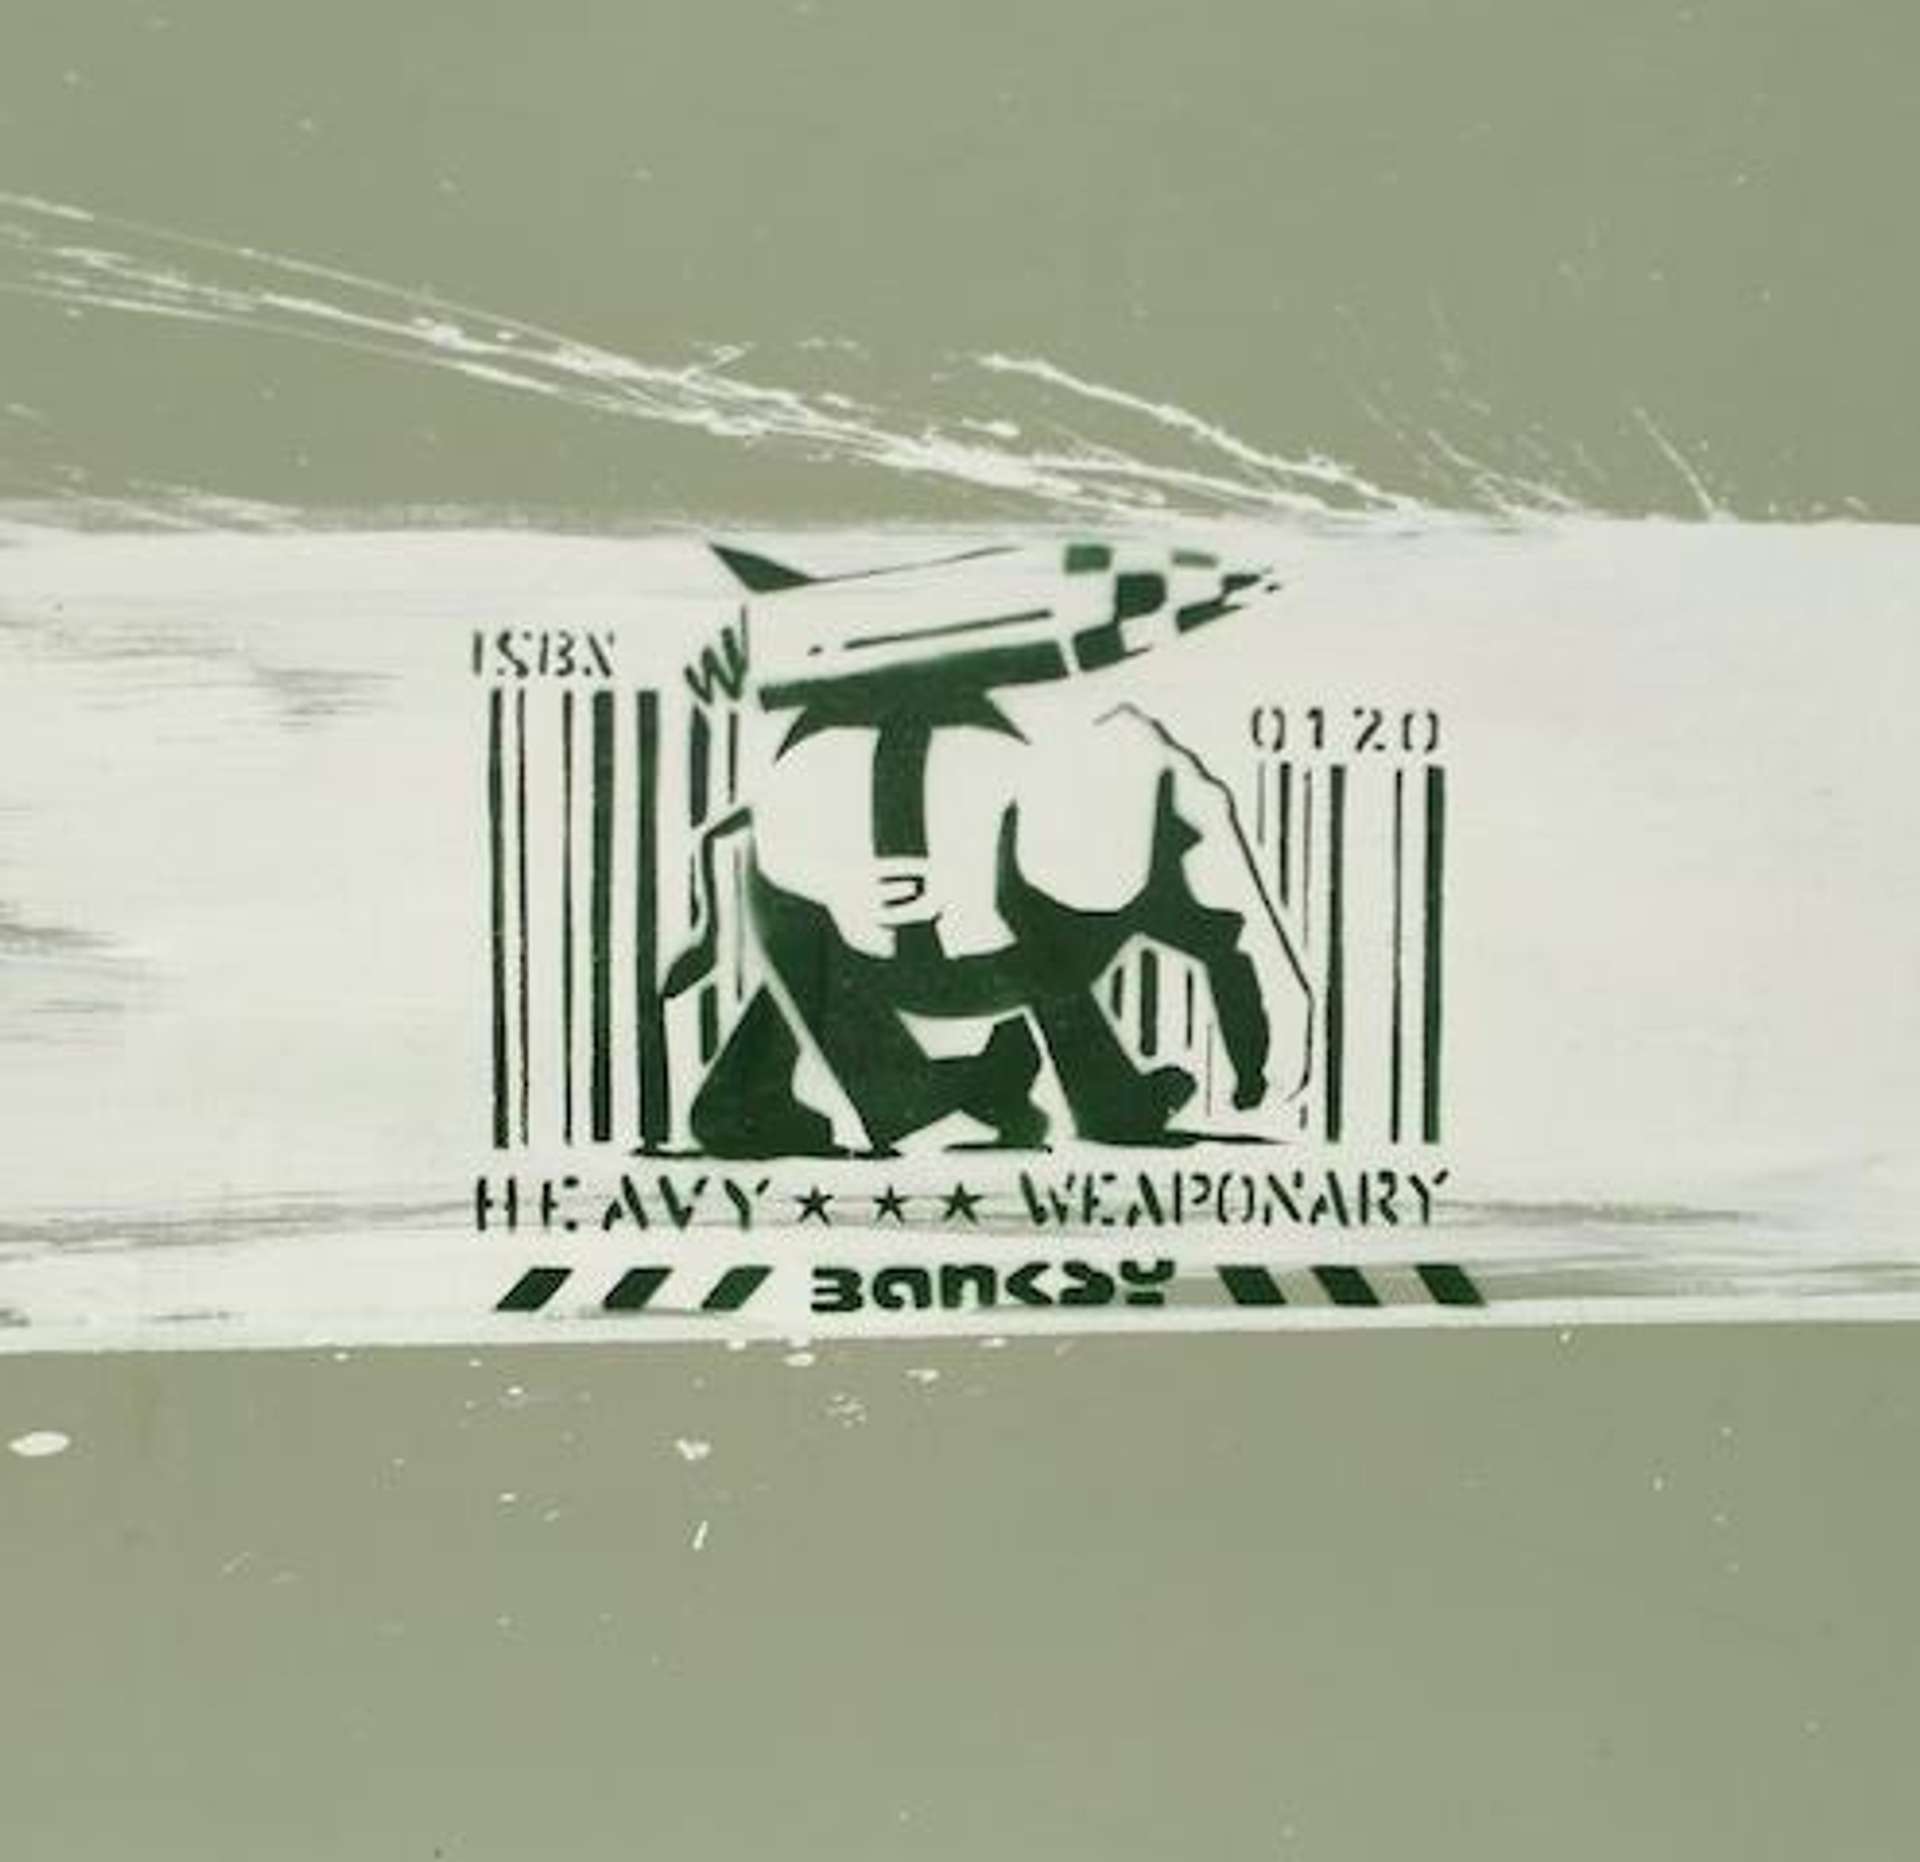 Heavy Weaponry - Mixed Media by Banksy 2000 - MyArtBroker